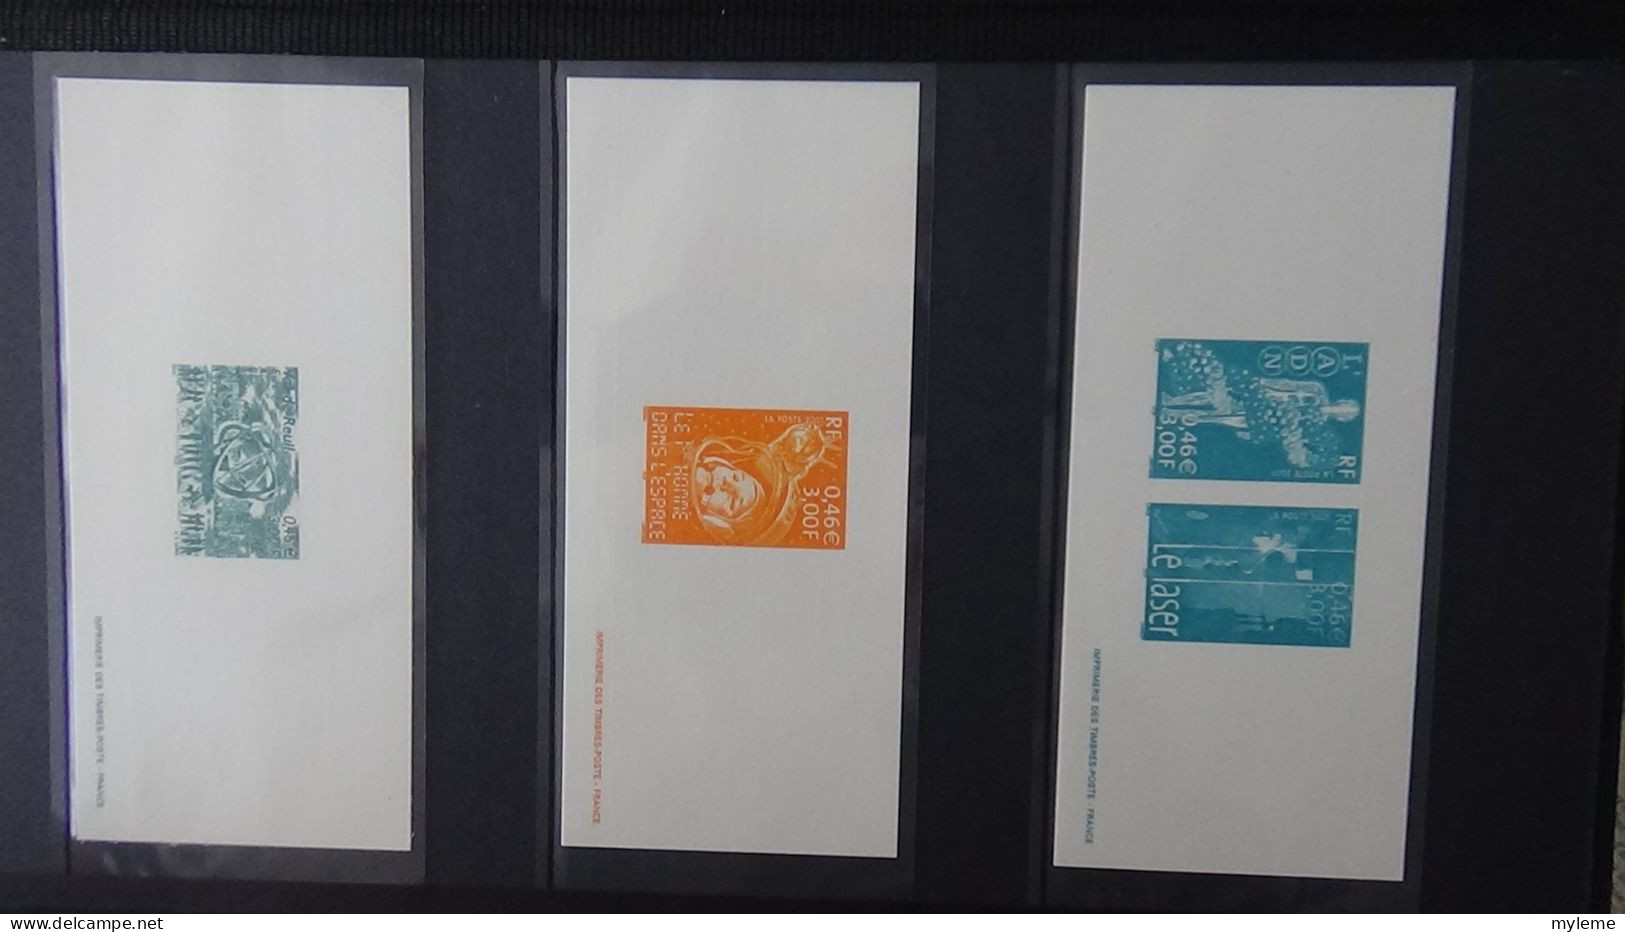 BF75 Gravures des timbres-poste de France sans son album d'origine   A saisir !!!